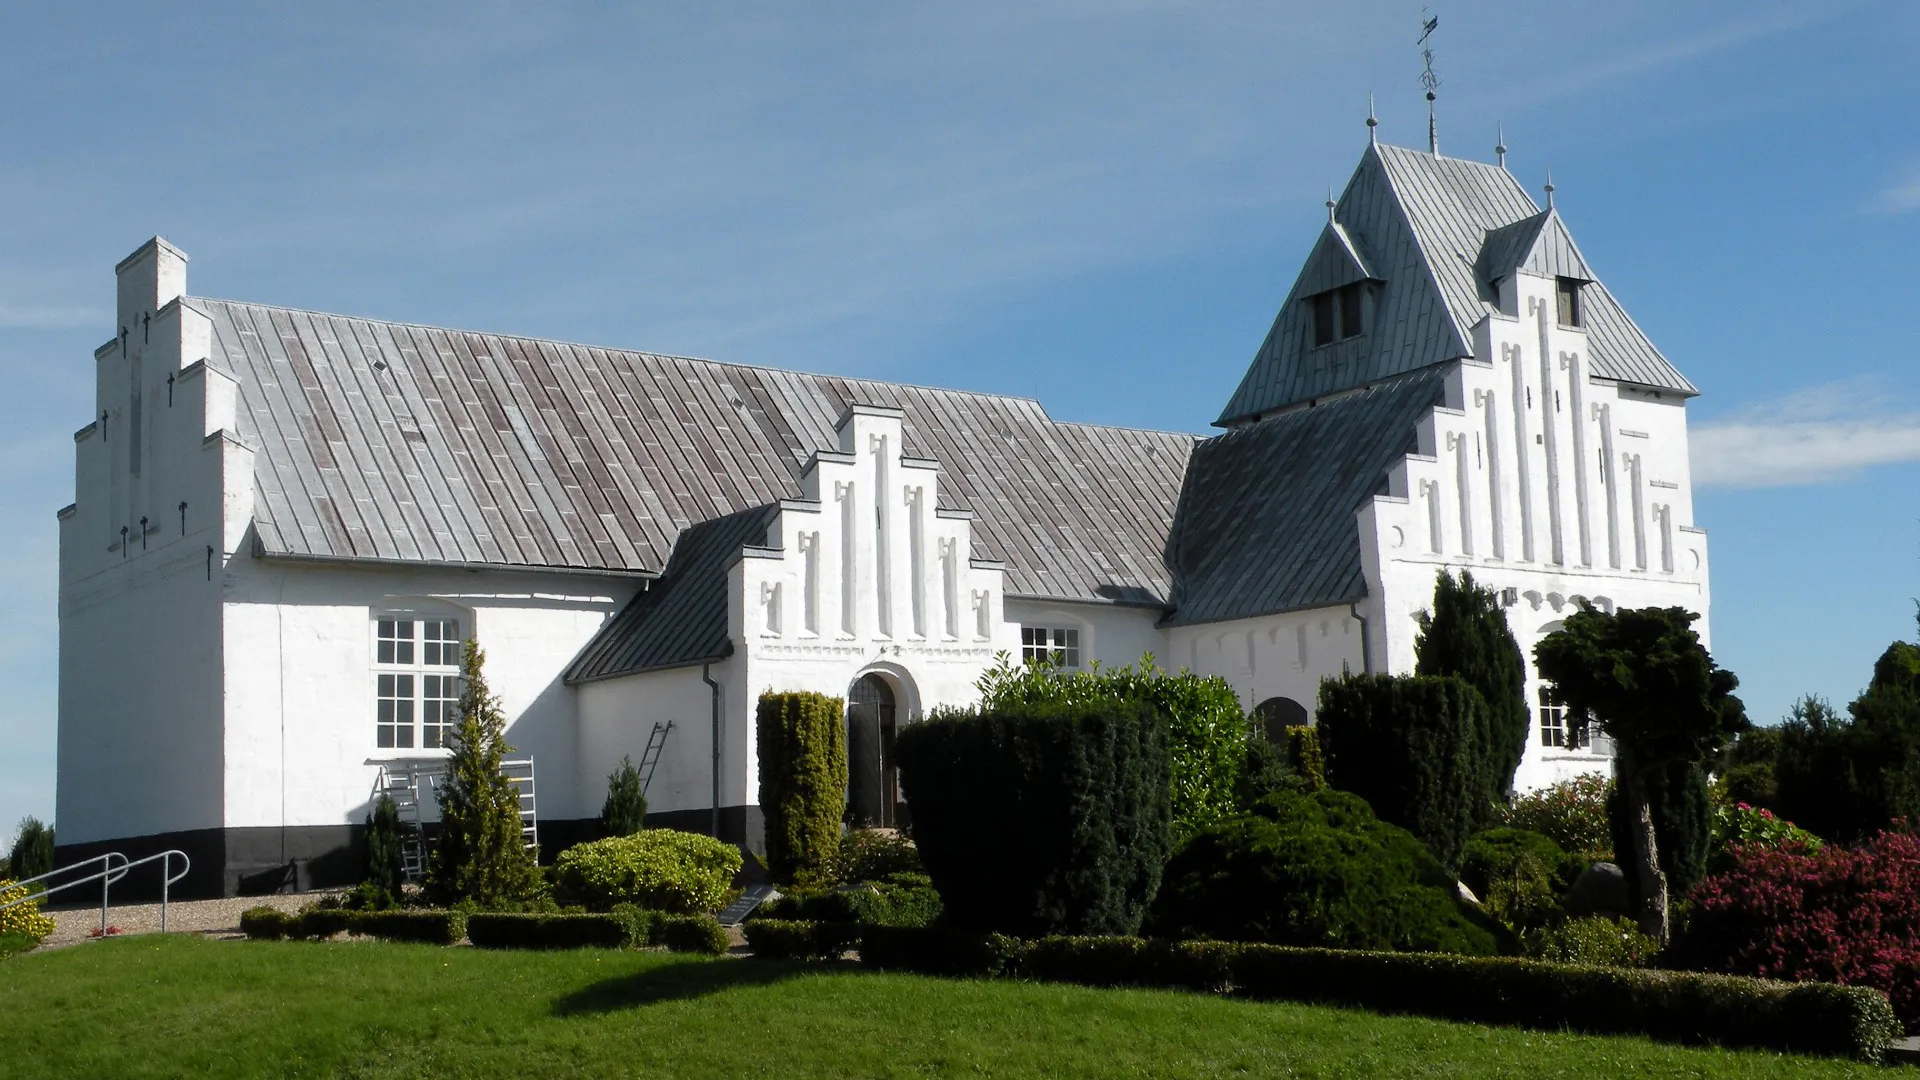 Halk Kirke